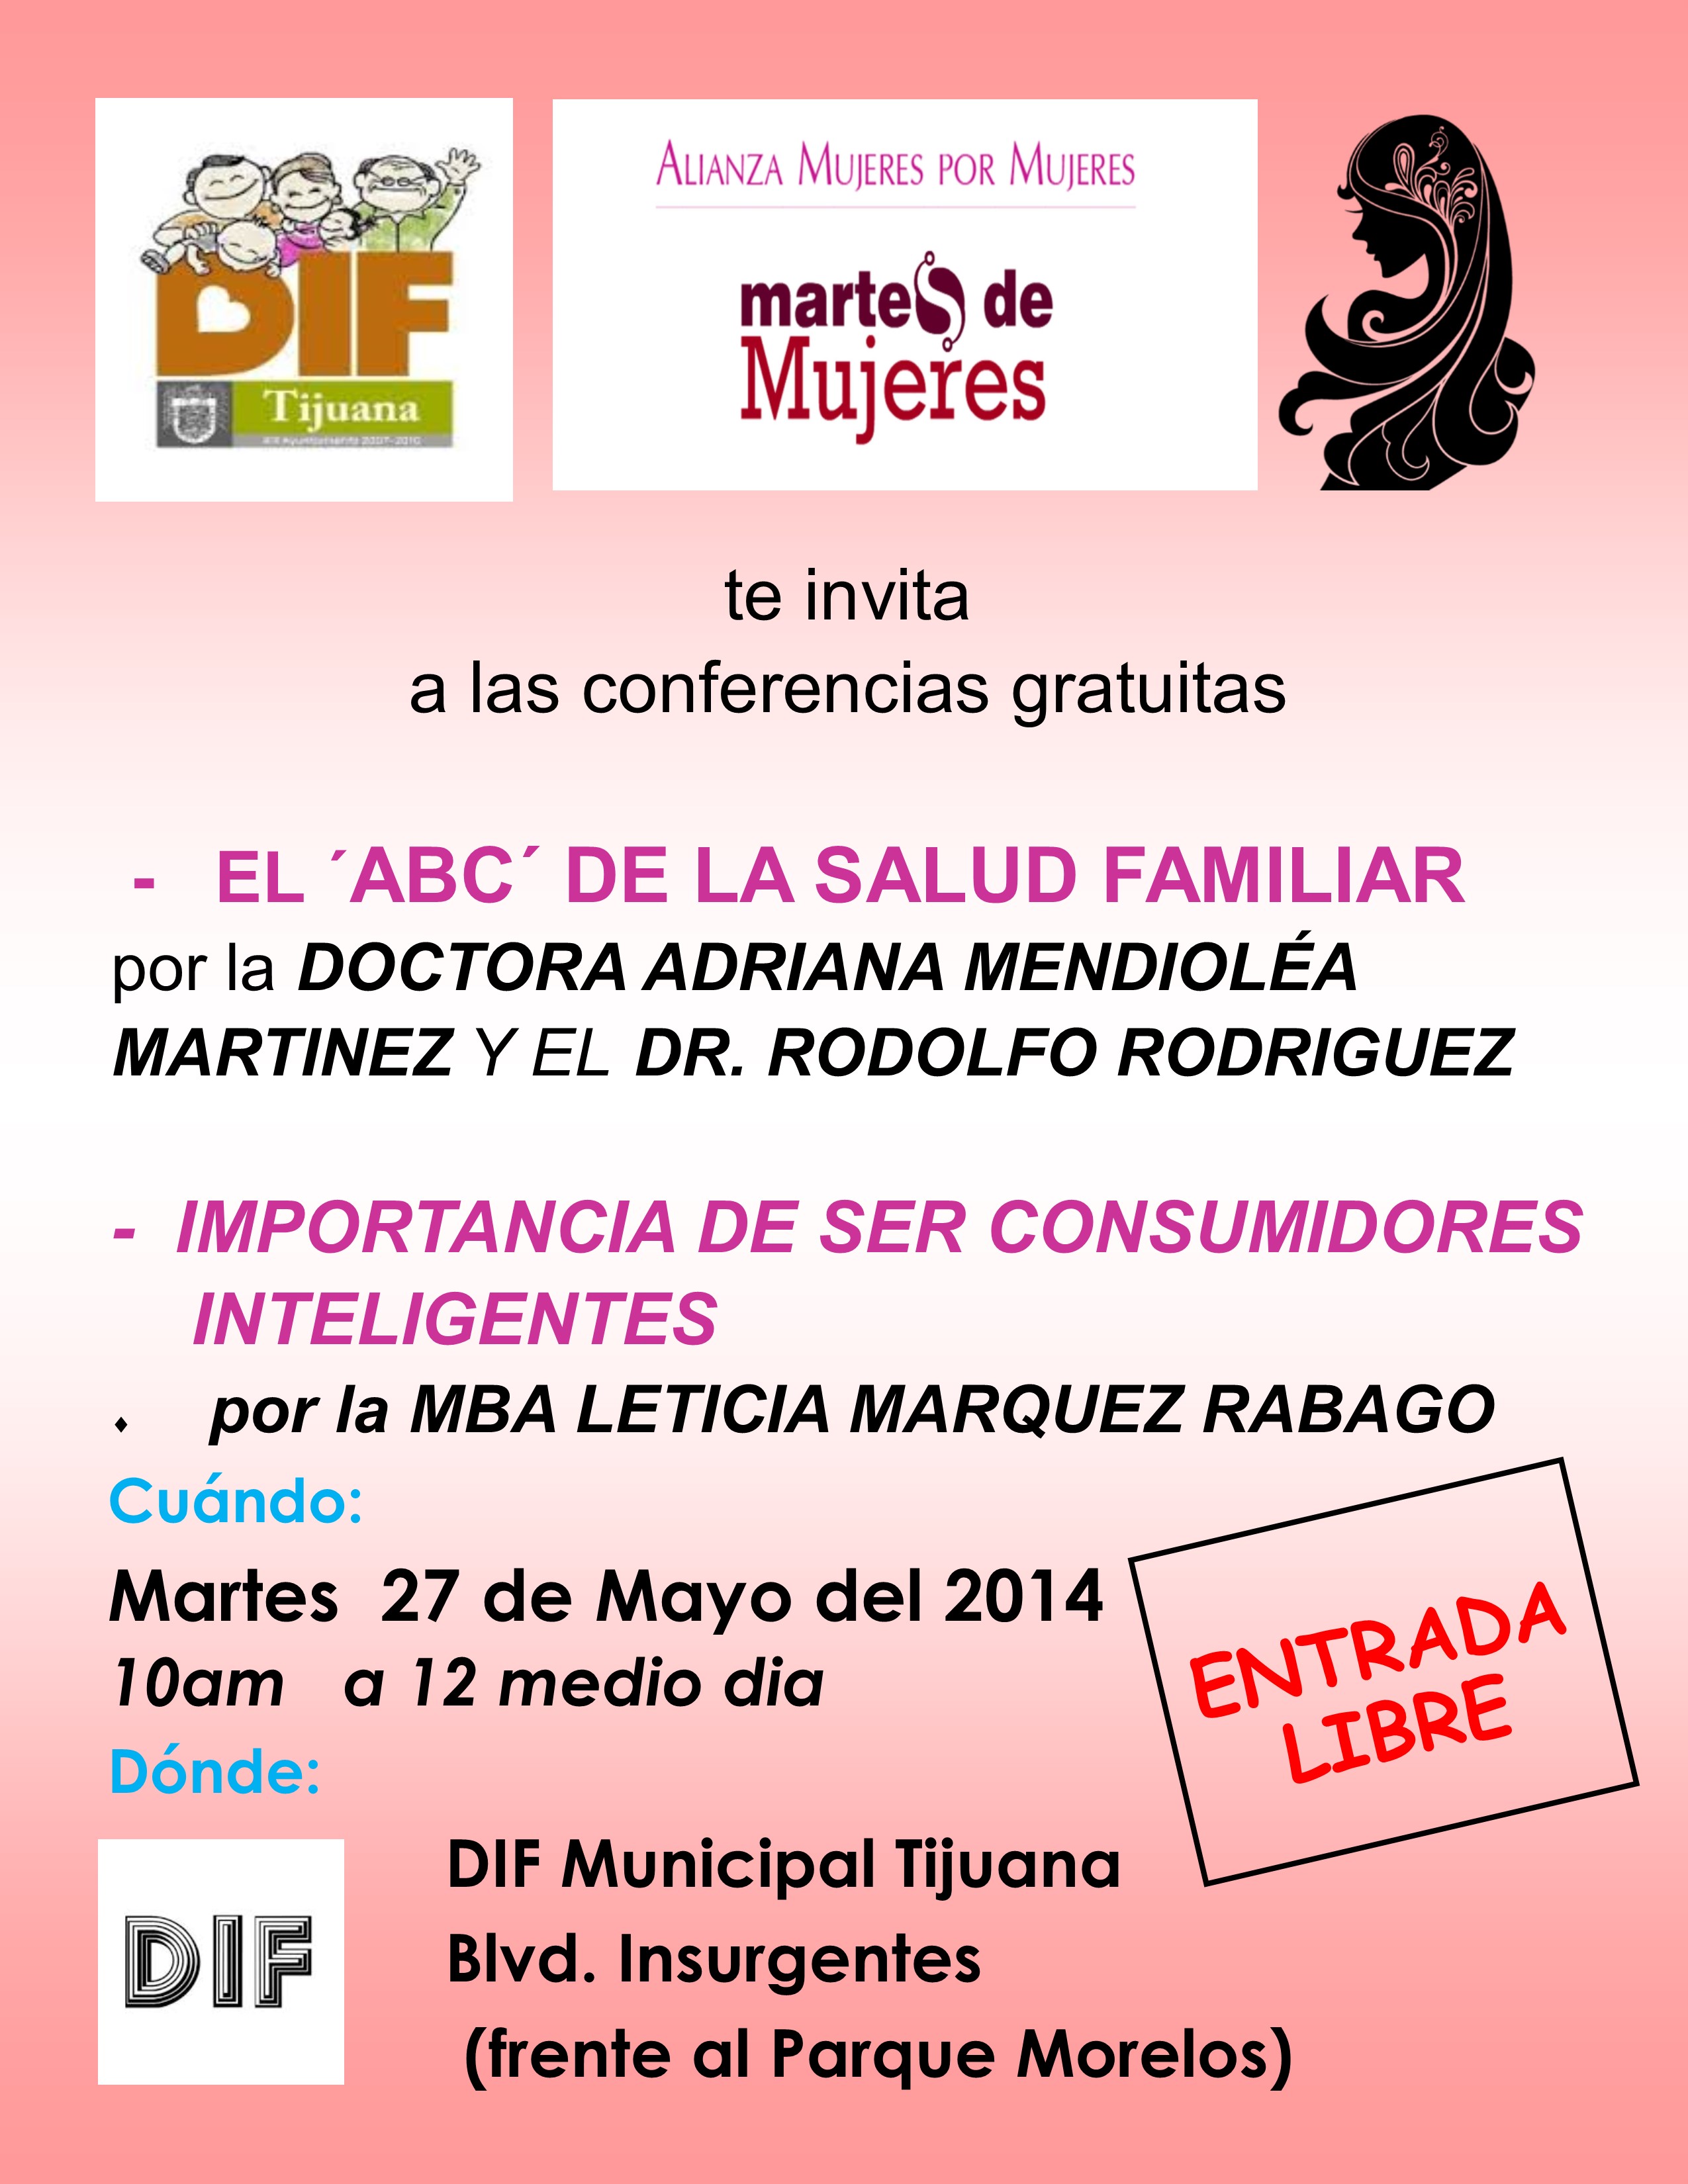 AMPM conferencias gratuitas 27 mayo 2014 DIF municipal